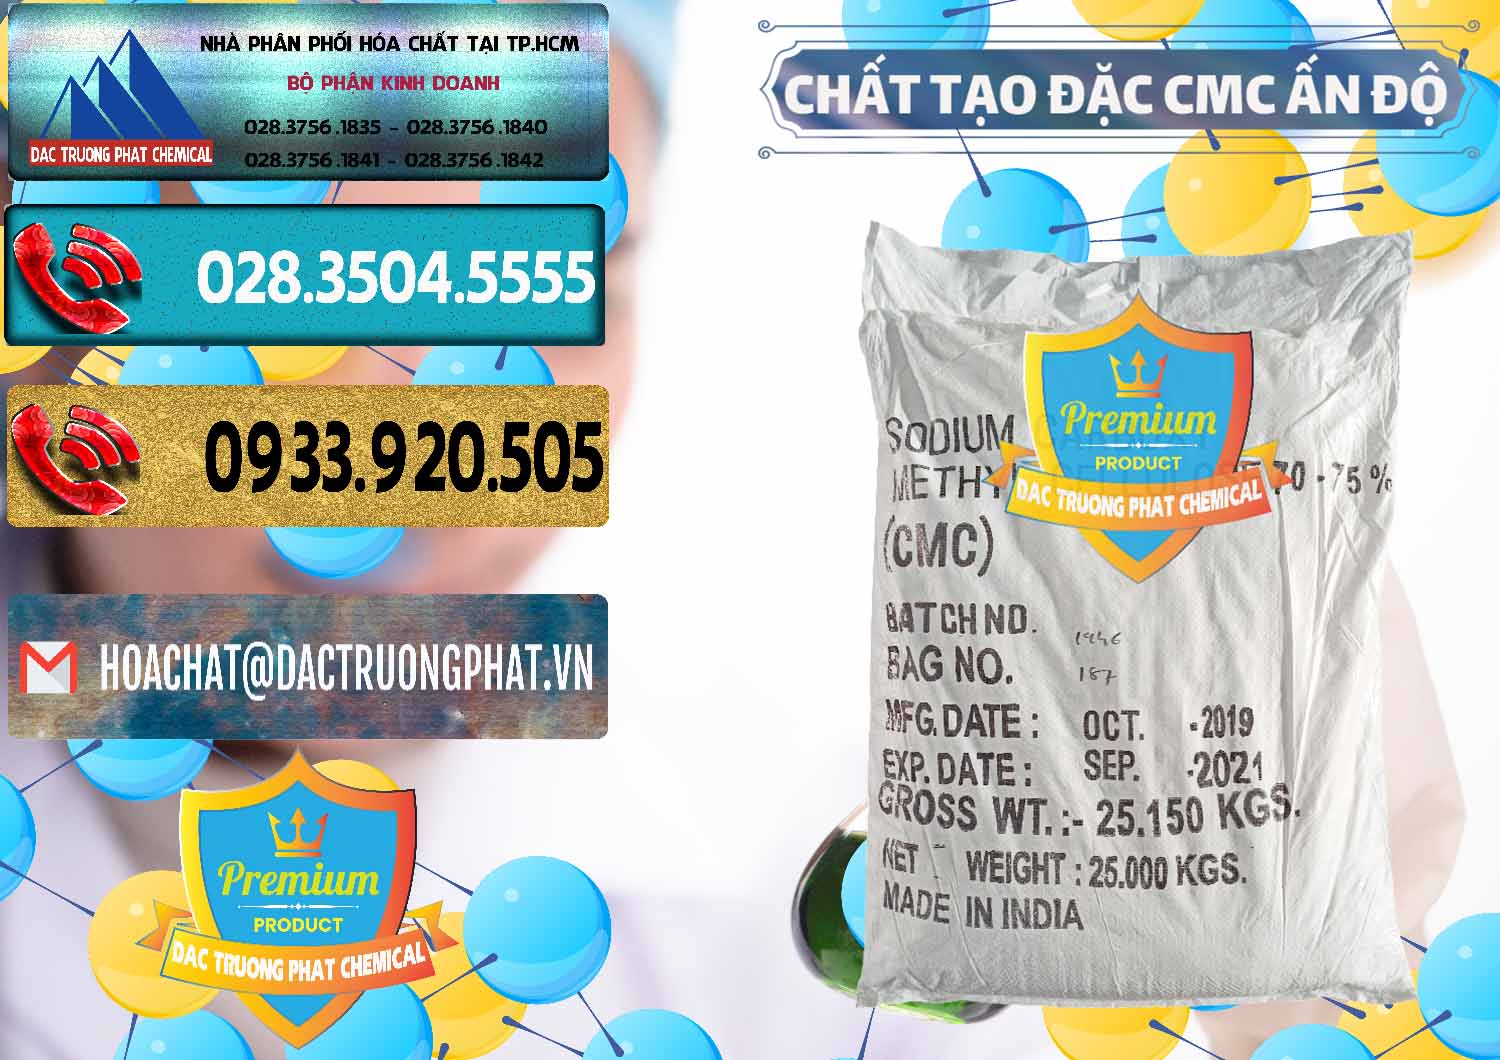 Chuyên kinh doanh - bán Chất Tạo Đặc CMC - Carboxyl Methyl Cellulose Ấn Độ India - 0044 - Nơi cung cấp _ phân phối hóa chất tại TP.HCM - hoachatdetnhuom.com